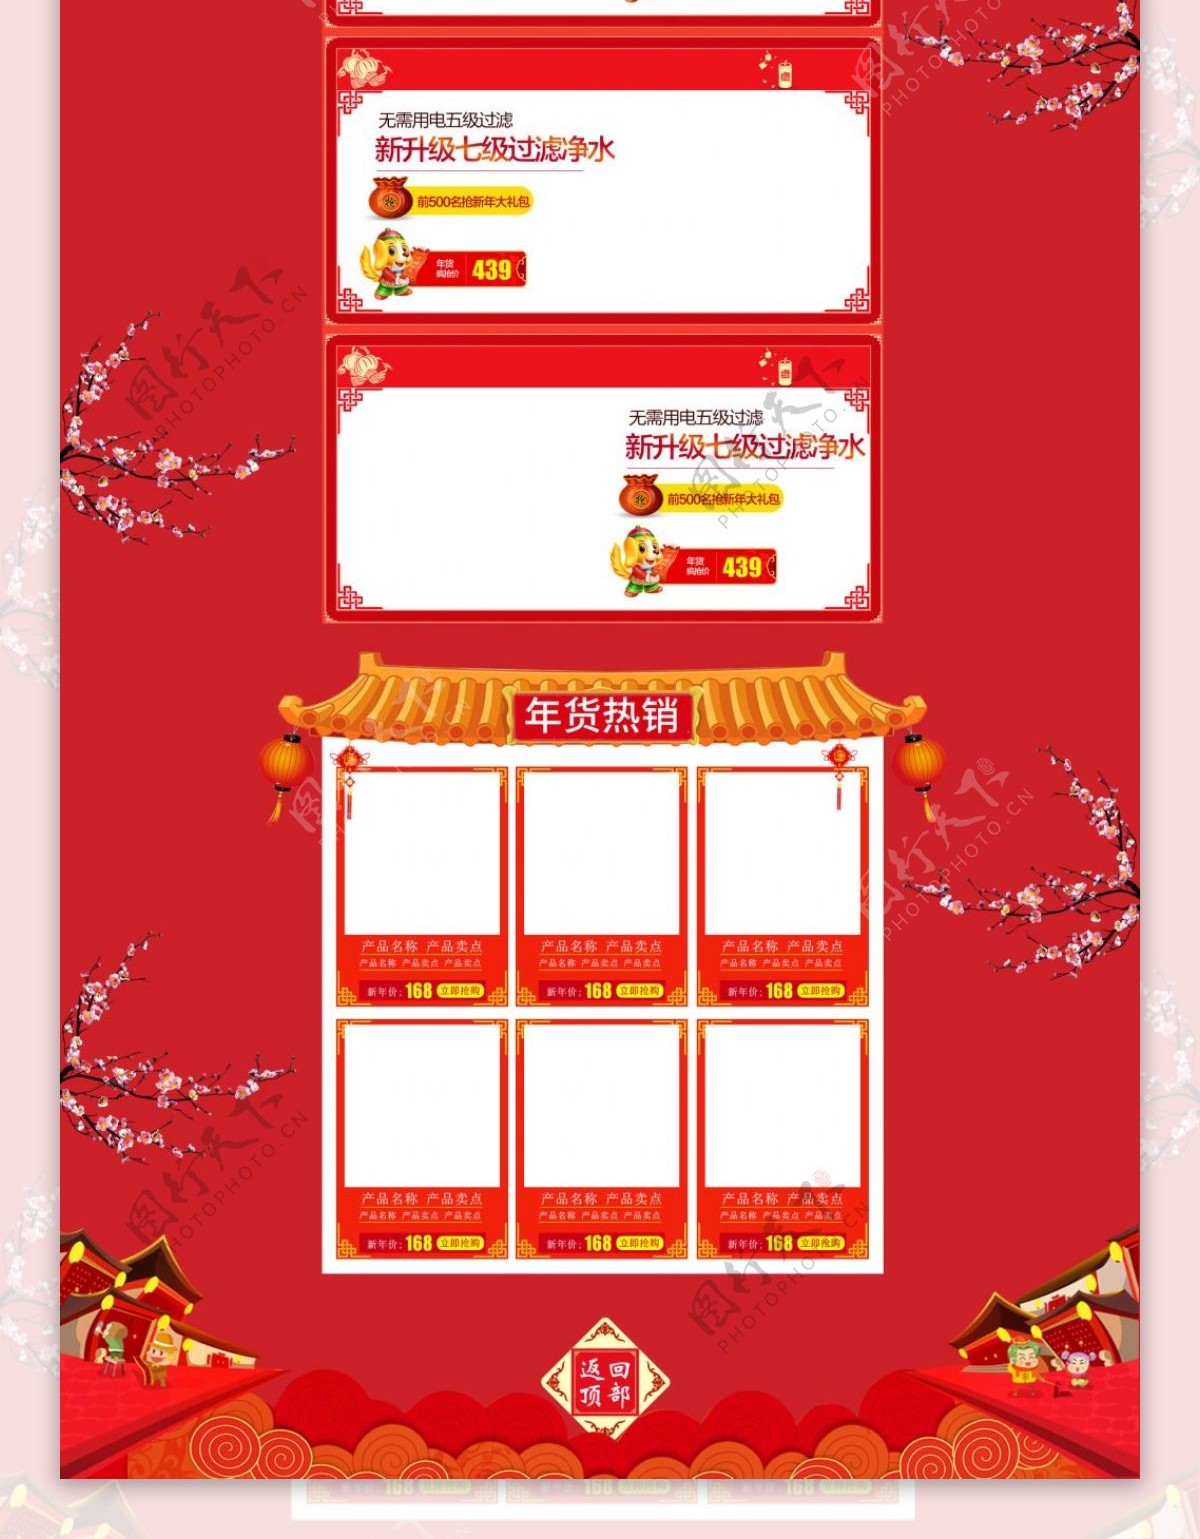 天猫贺岁狂欢新春年货节首页通过模板